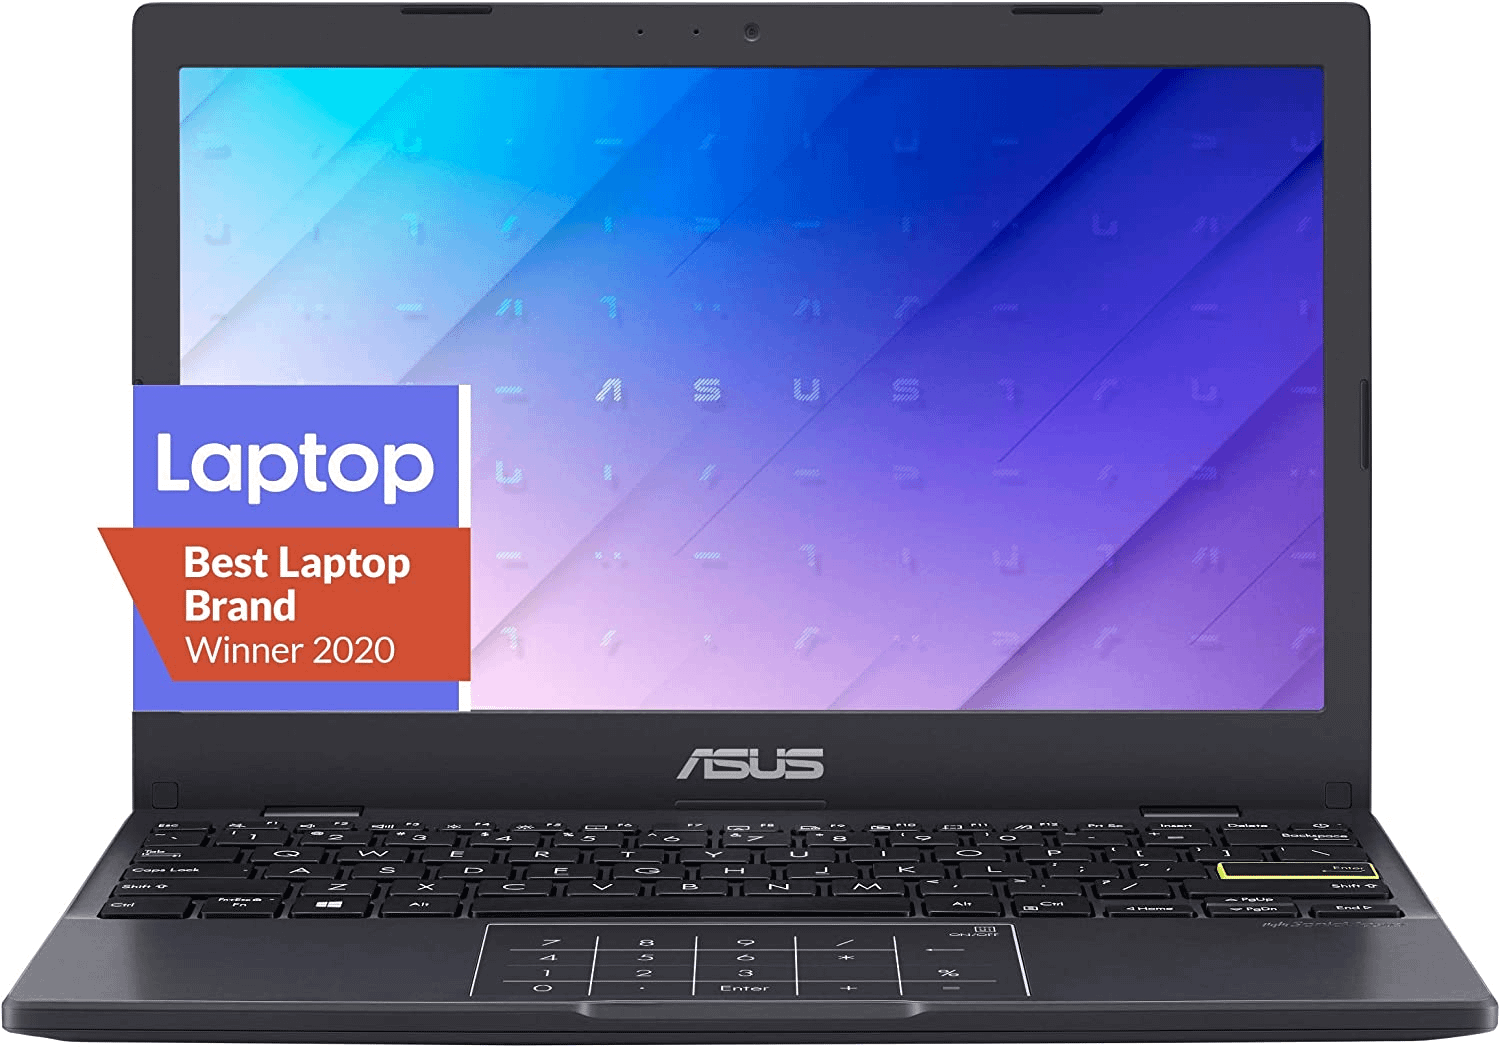 ASUS Vivobook Laptop L210 11.6, 